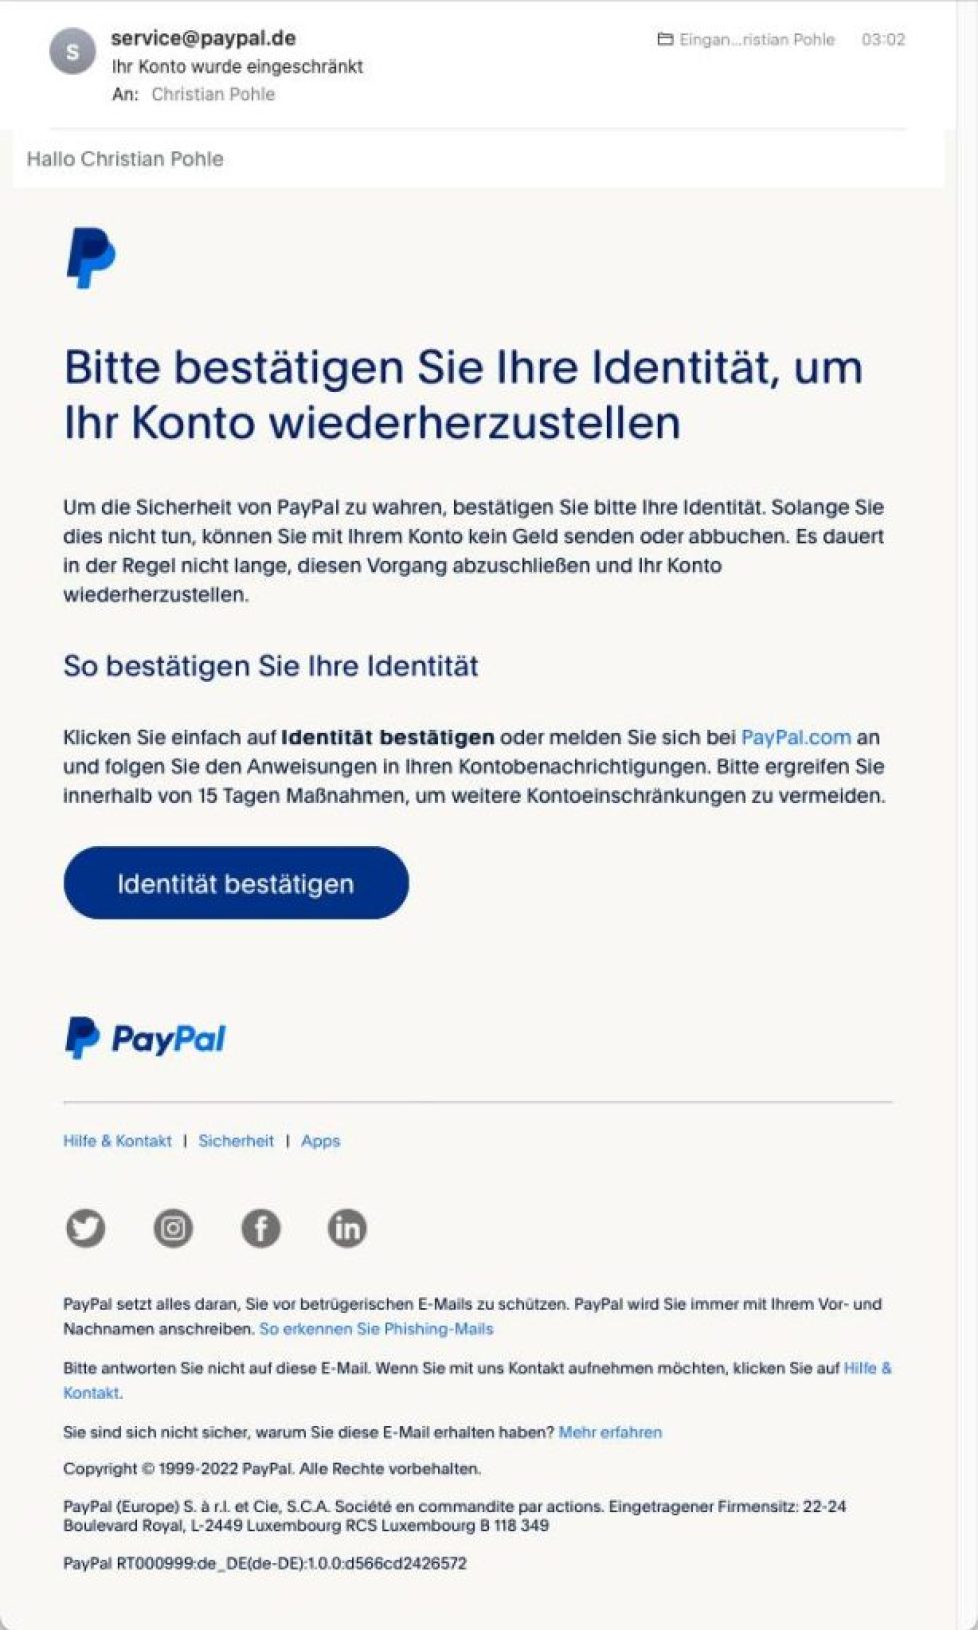 Pay-Pal-Phishing